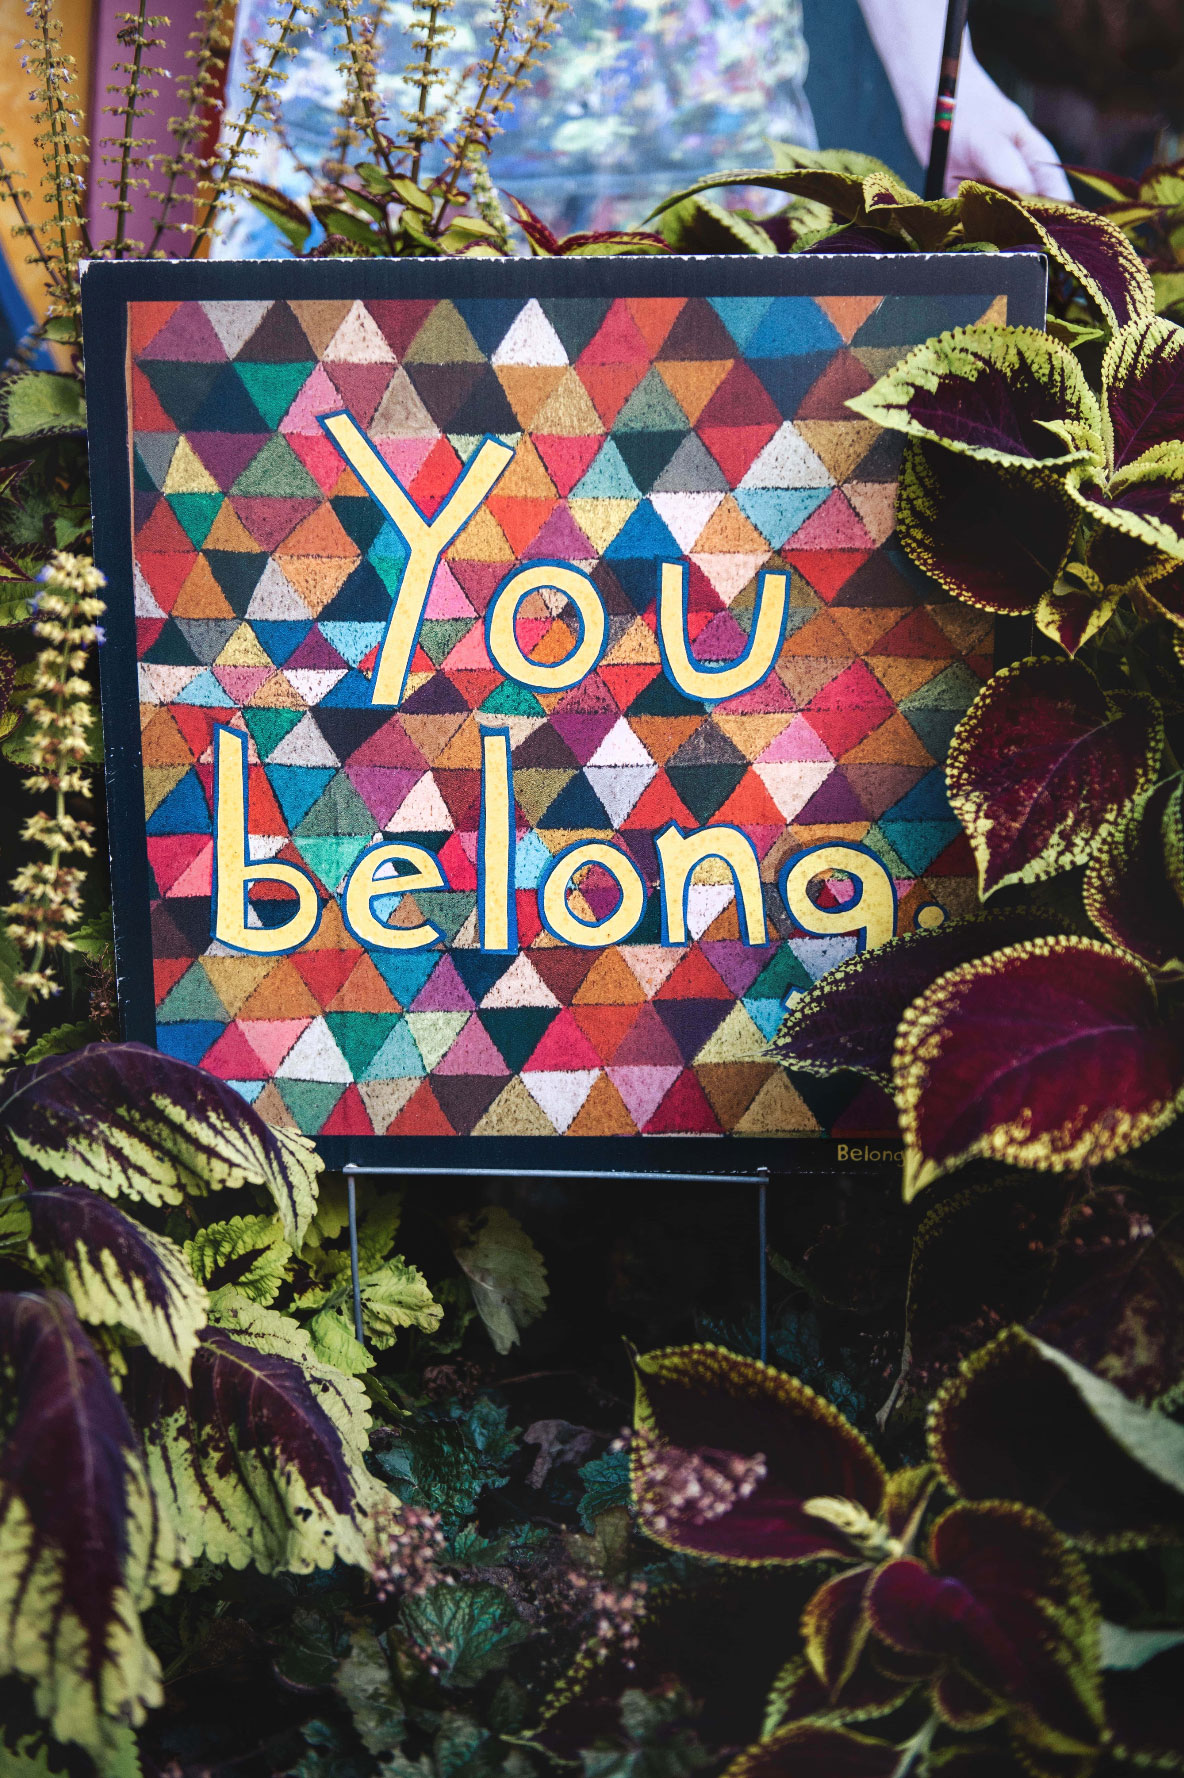 Bunt steht "You belong" auf einem Schild inmitten von Pflanzen